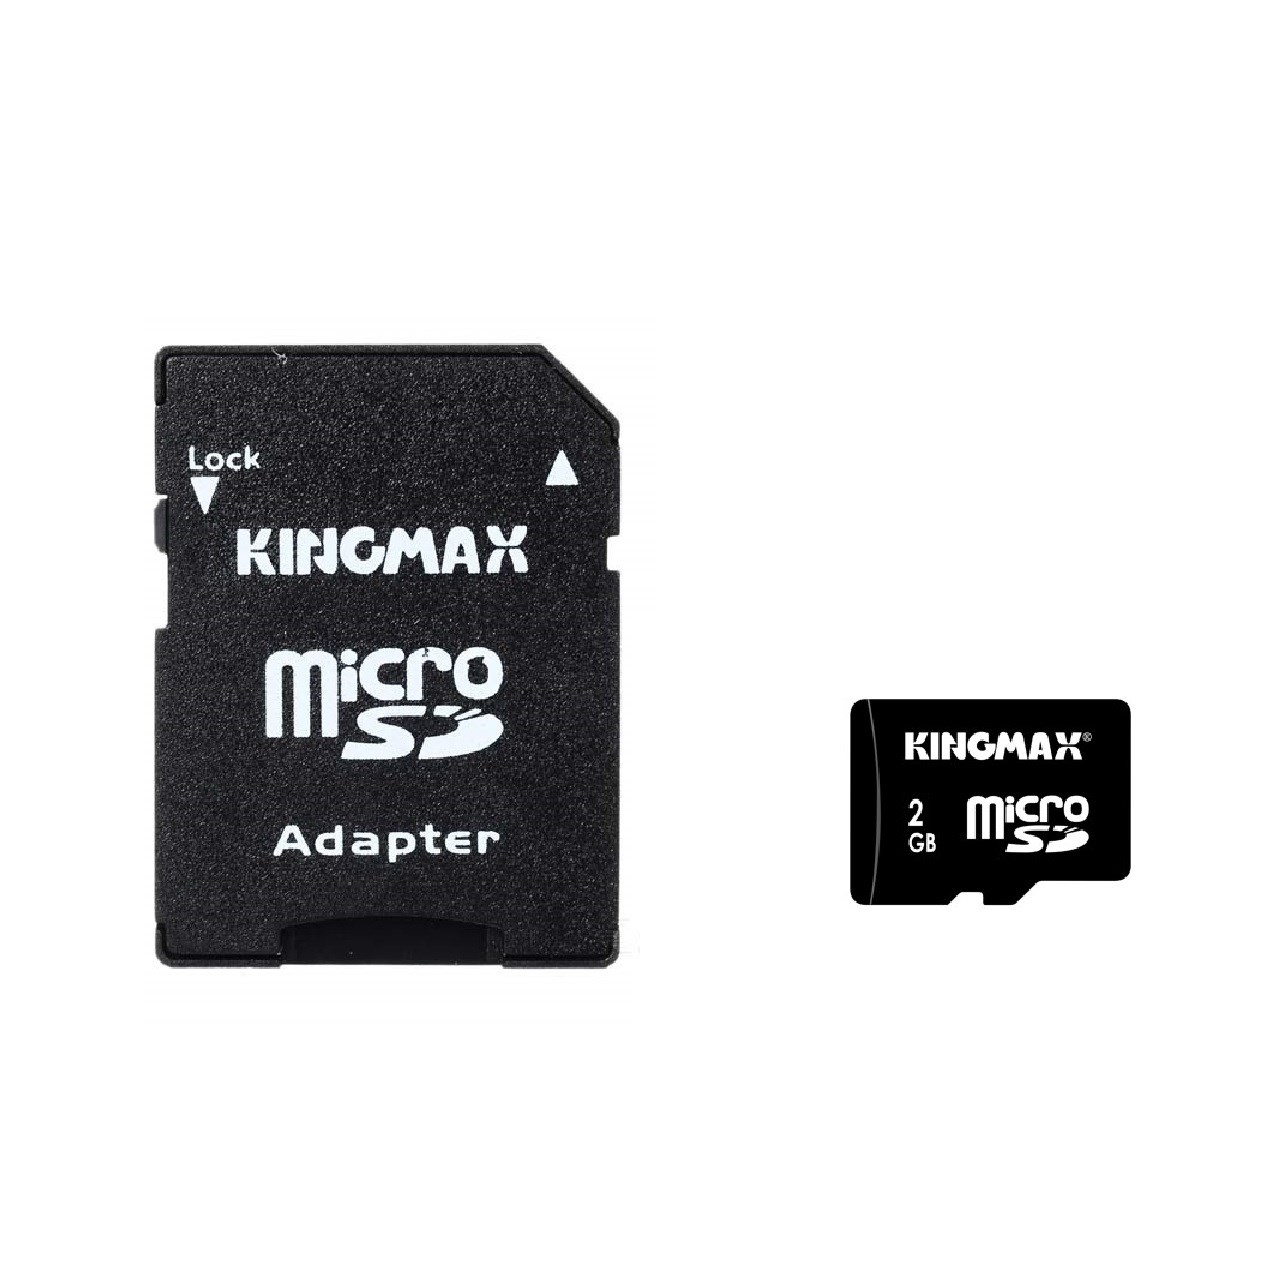 کارت حافظه microSD کینگ مکس به همراه آداپتور SD ظرفیت 2 گیگابایت